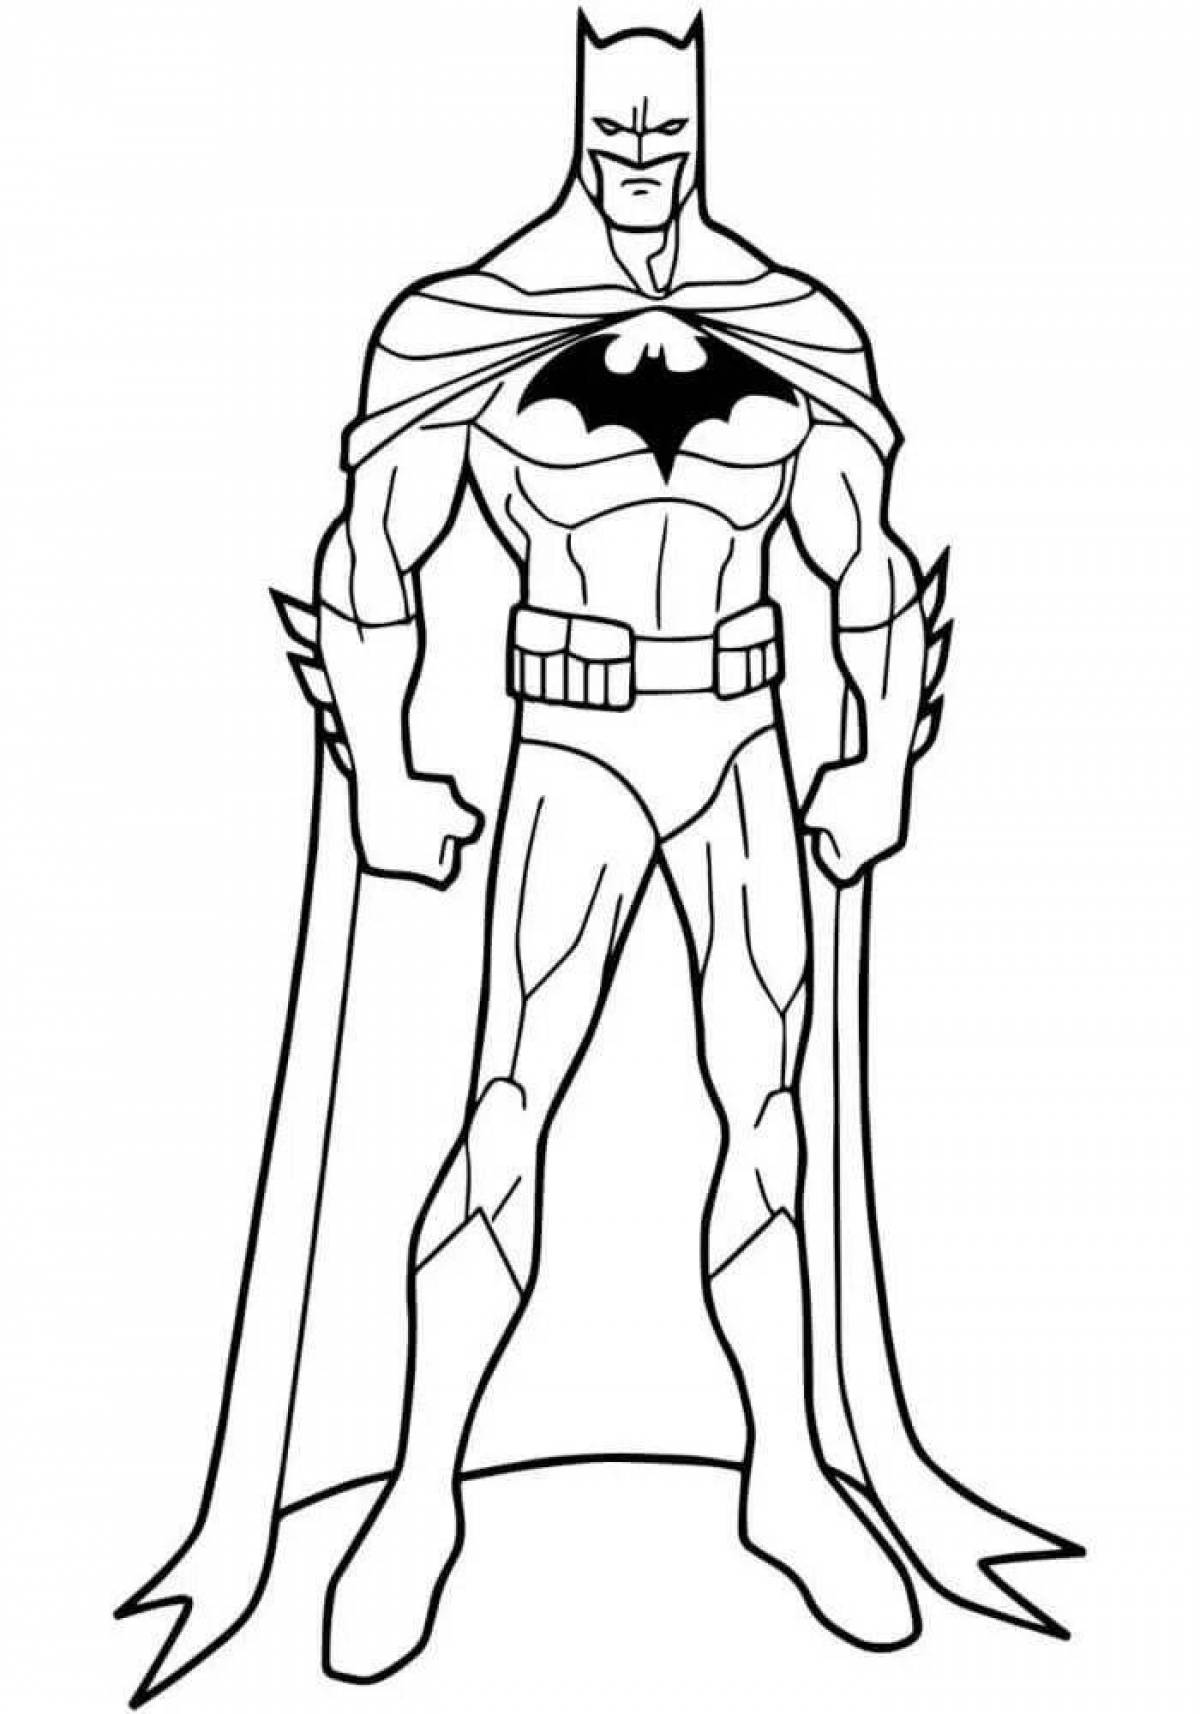 Courageous Batman coloring page